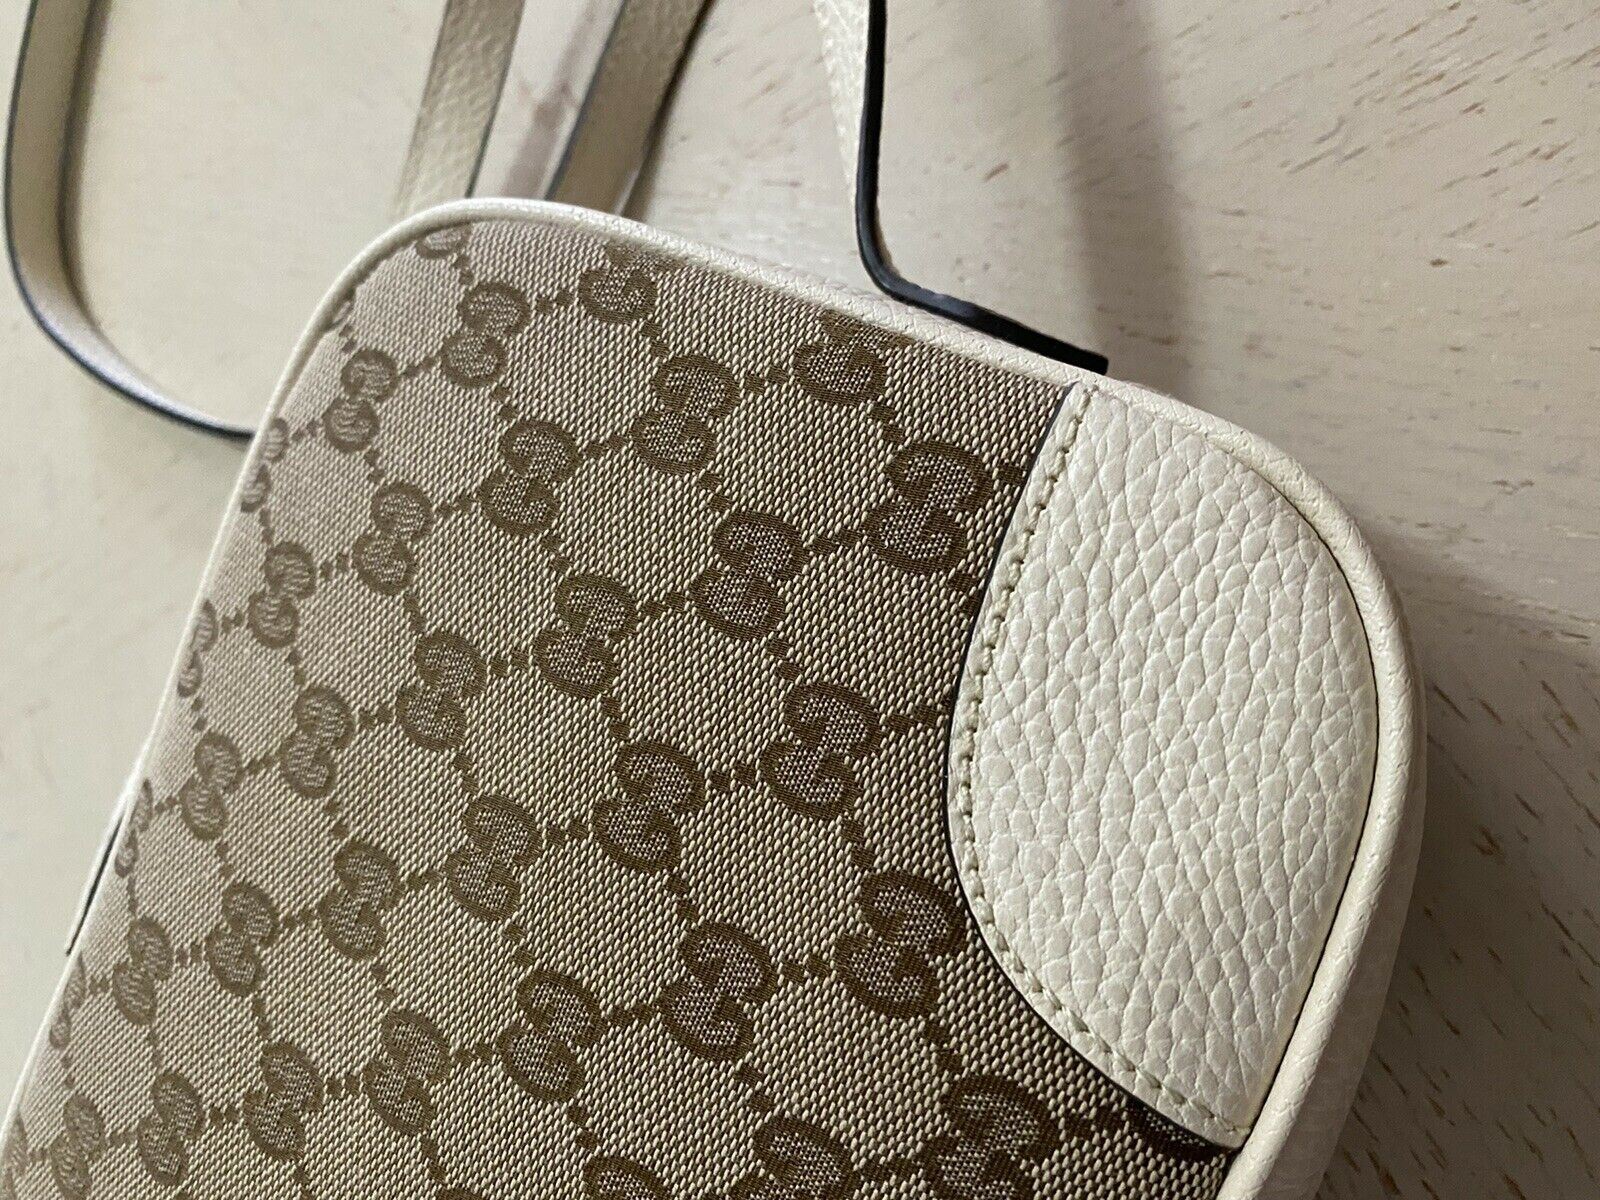 Новая сумка через плечо Gucci GG Monogram из кожи и холста, коричневая/кремовая 449413